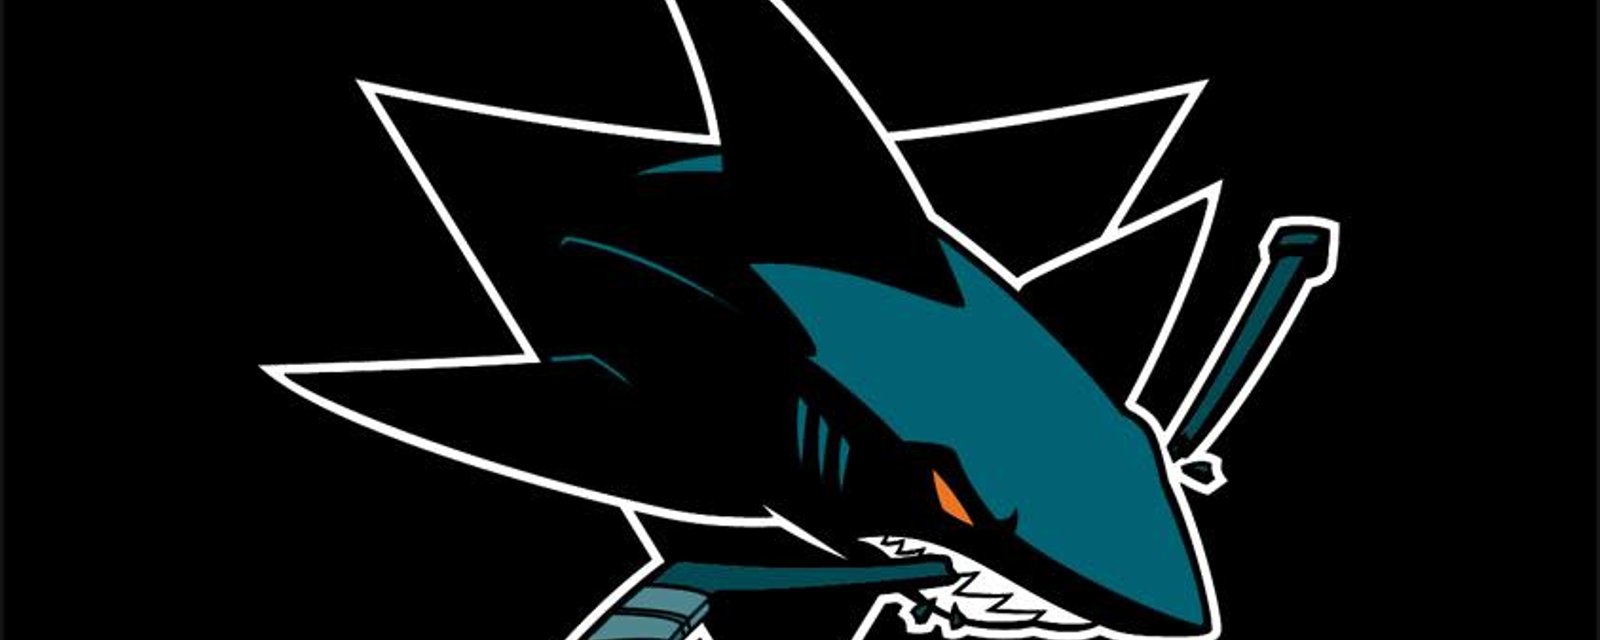 Une équipe de la KHL vole les chandails des Sharks